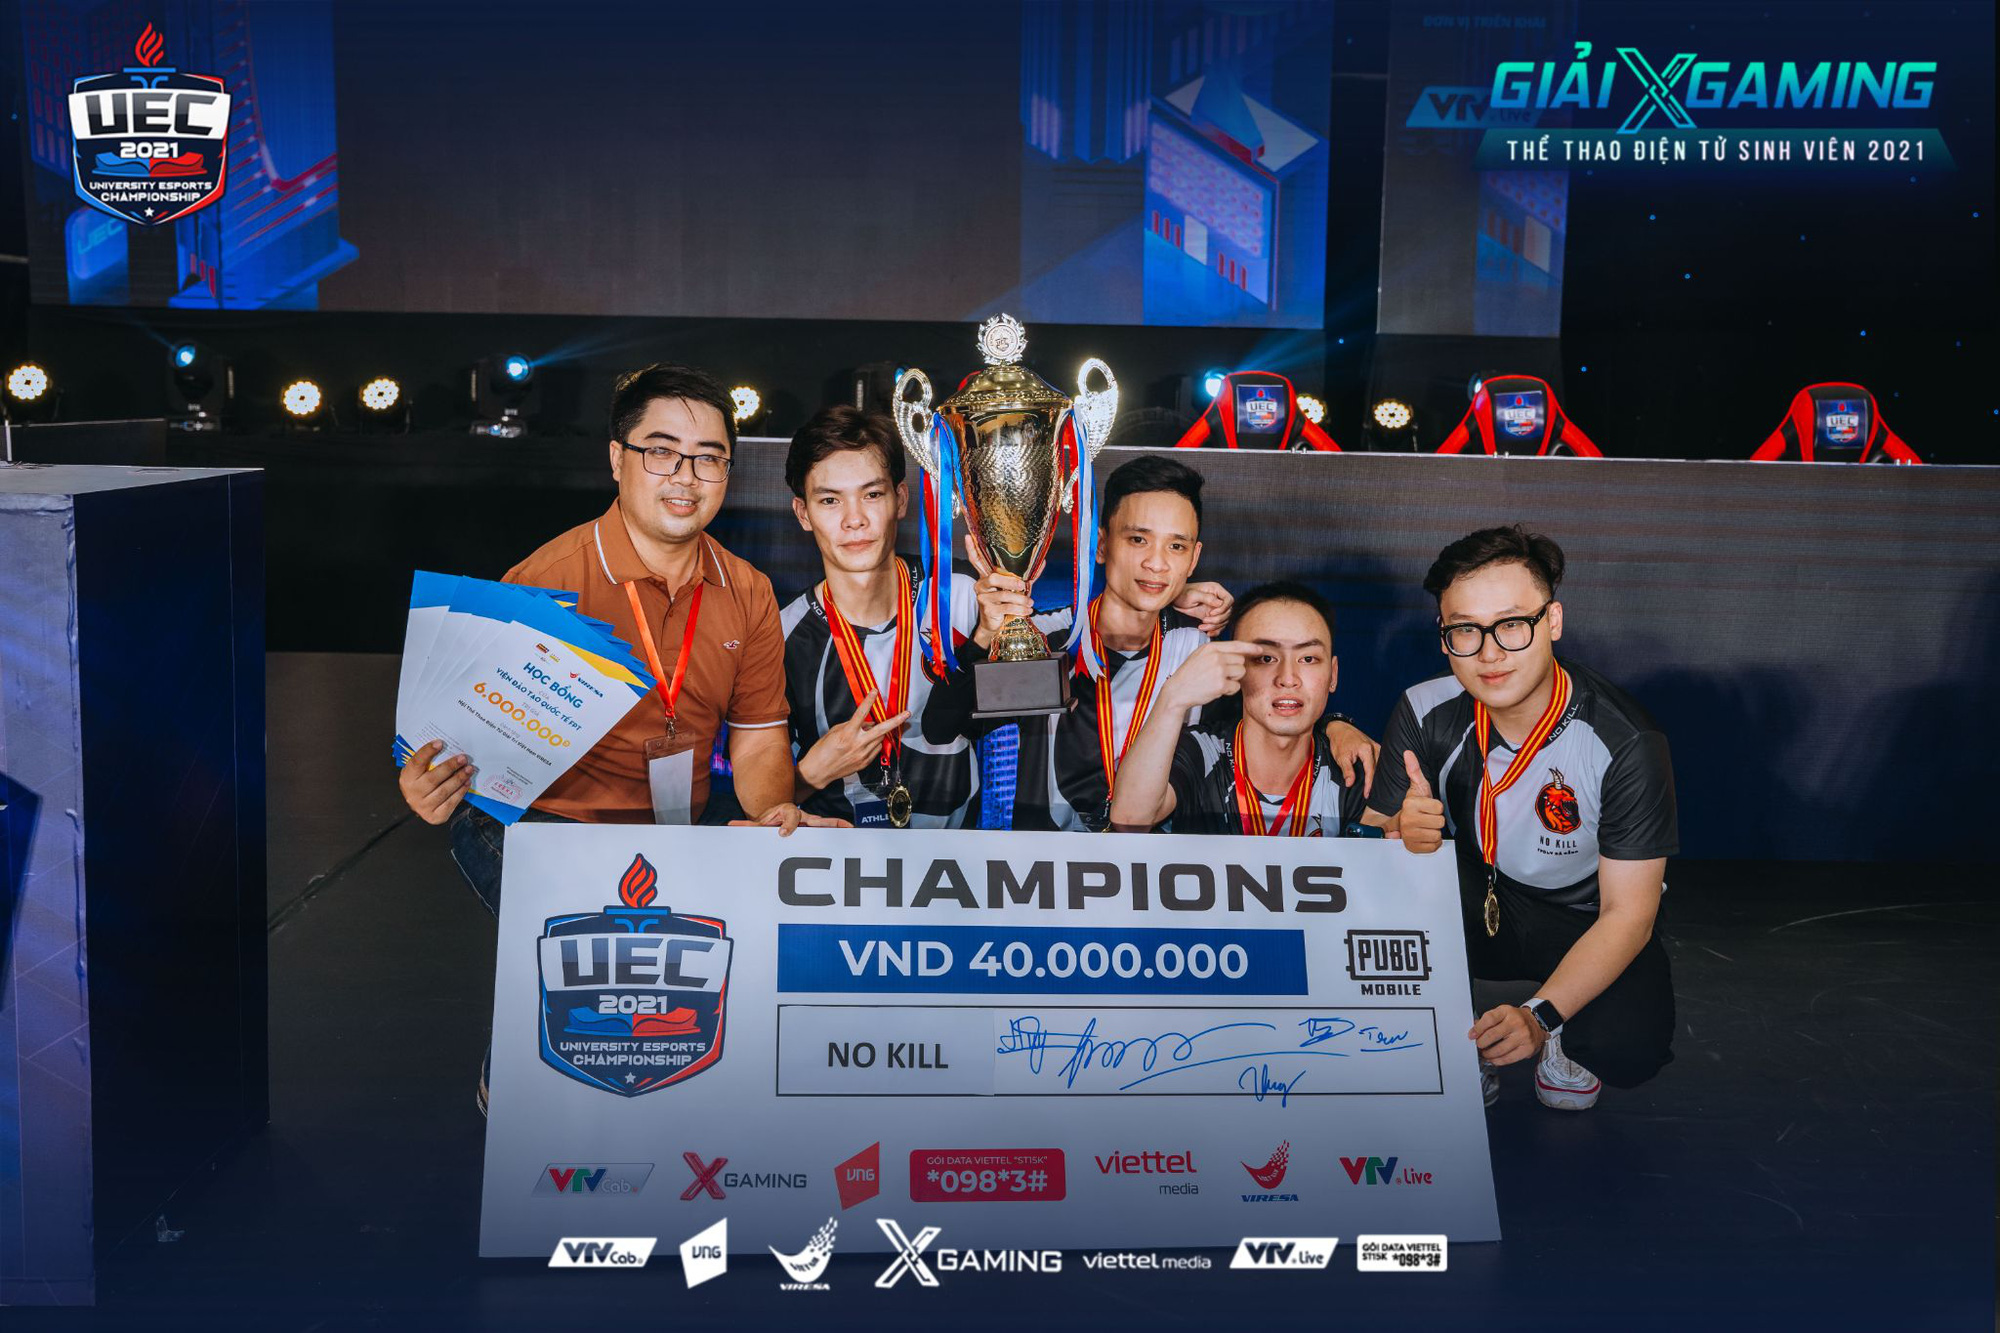 Đã tìm ra 2 tân vô địch giải Xgaming Thể thao điện tử sinh viên - UEC 2021! - Ảnh 4.